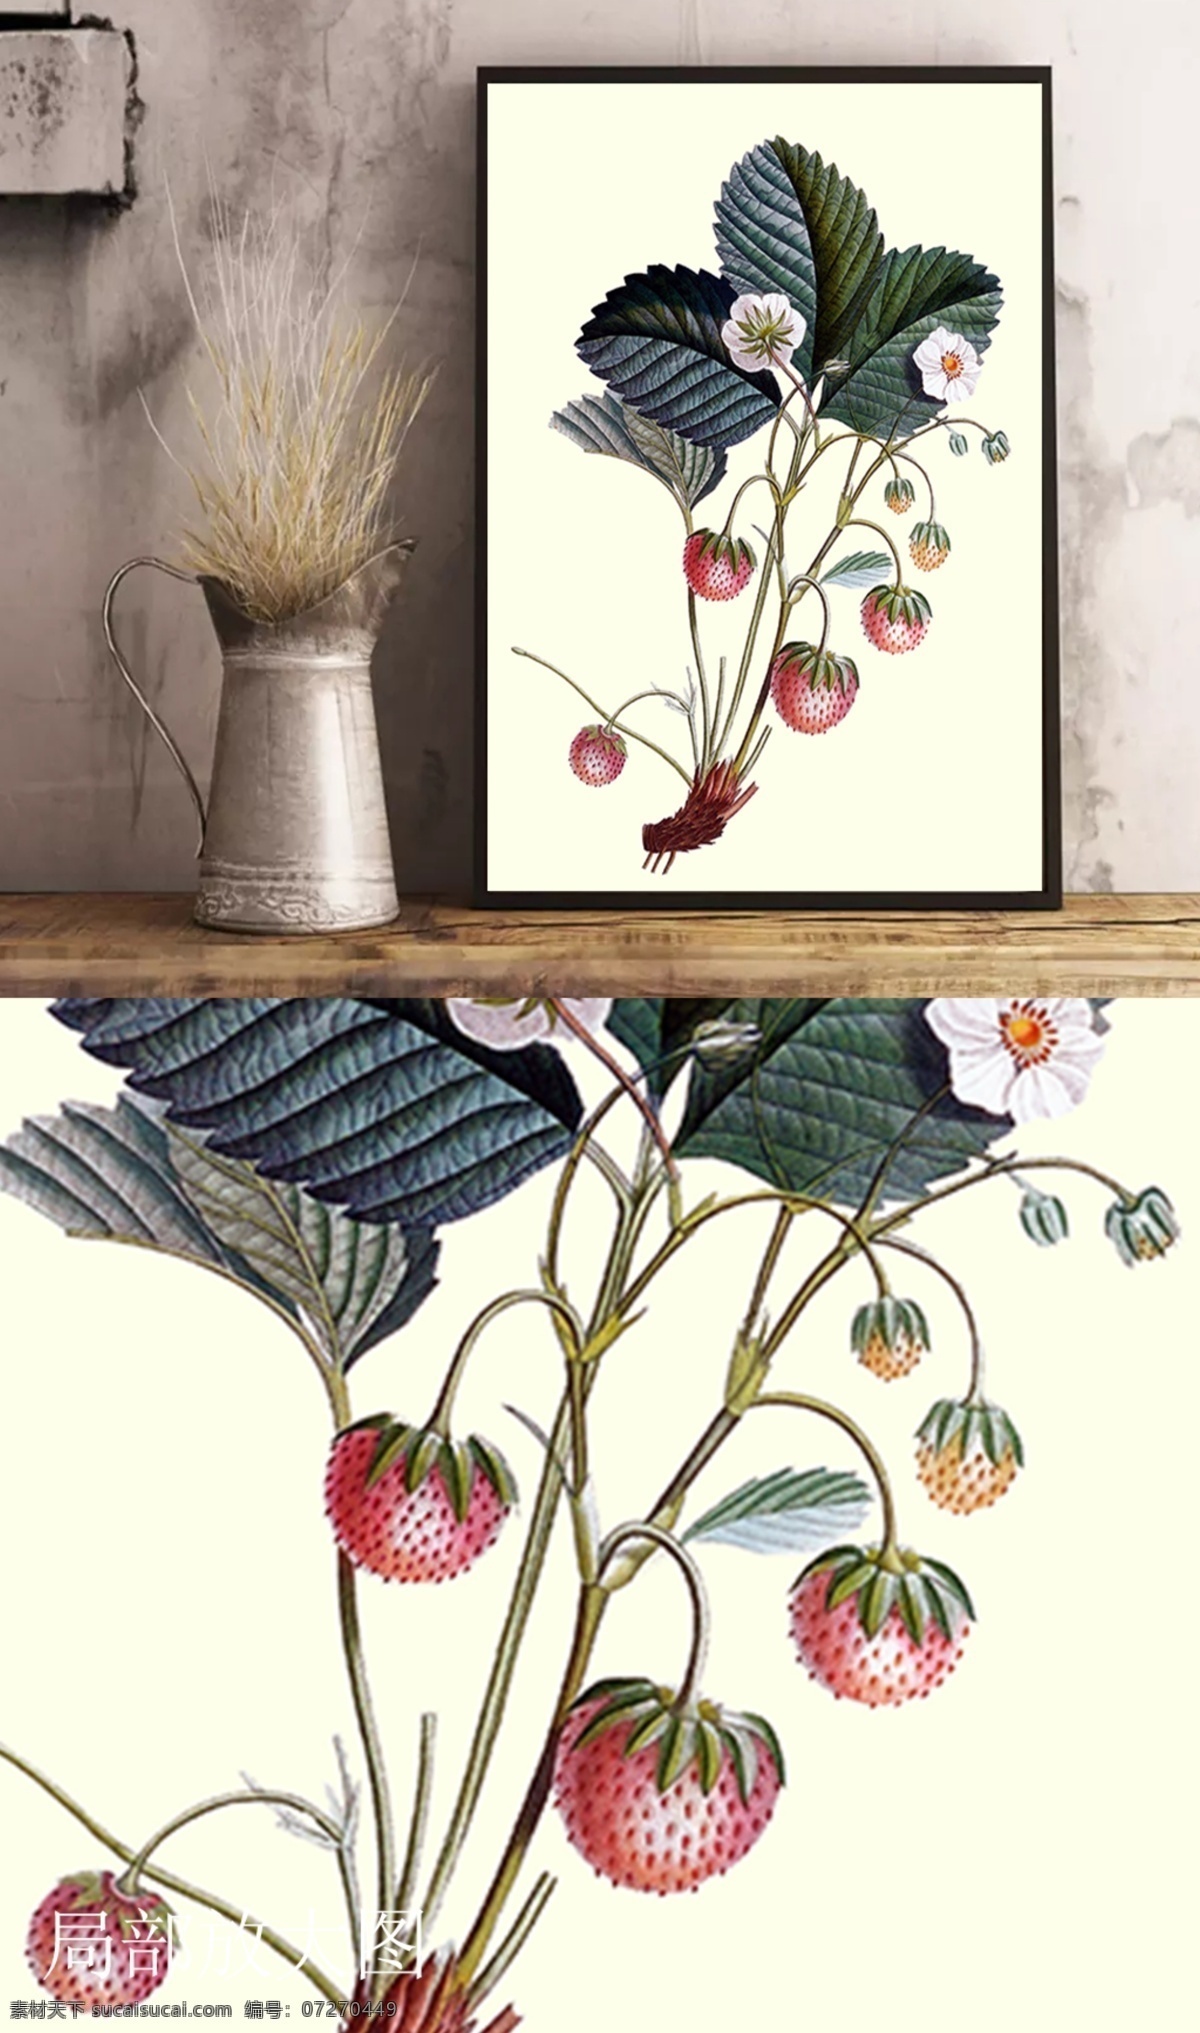 装饰画 草莓 季节 壁画 客厅挂画 手绘 水彩画 小清新